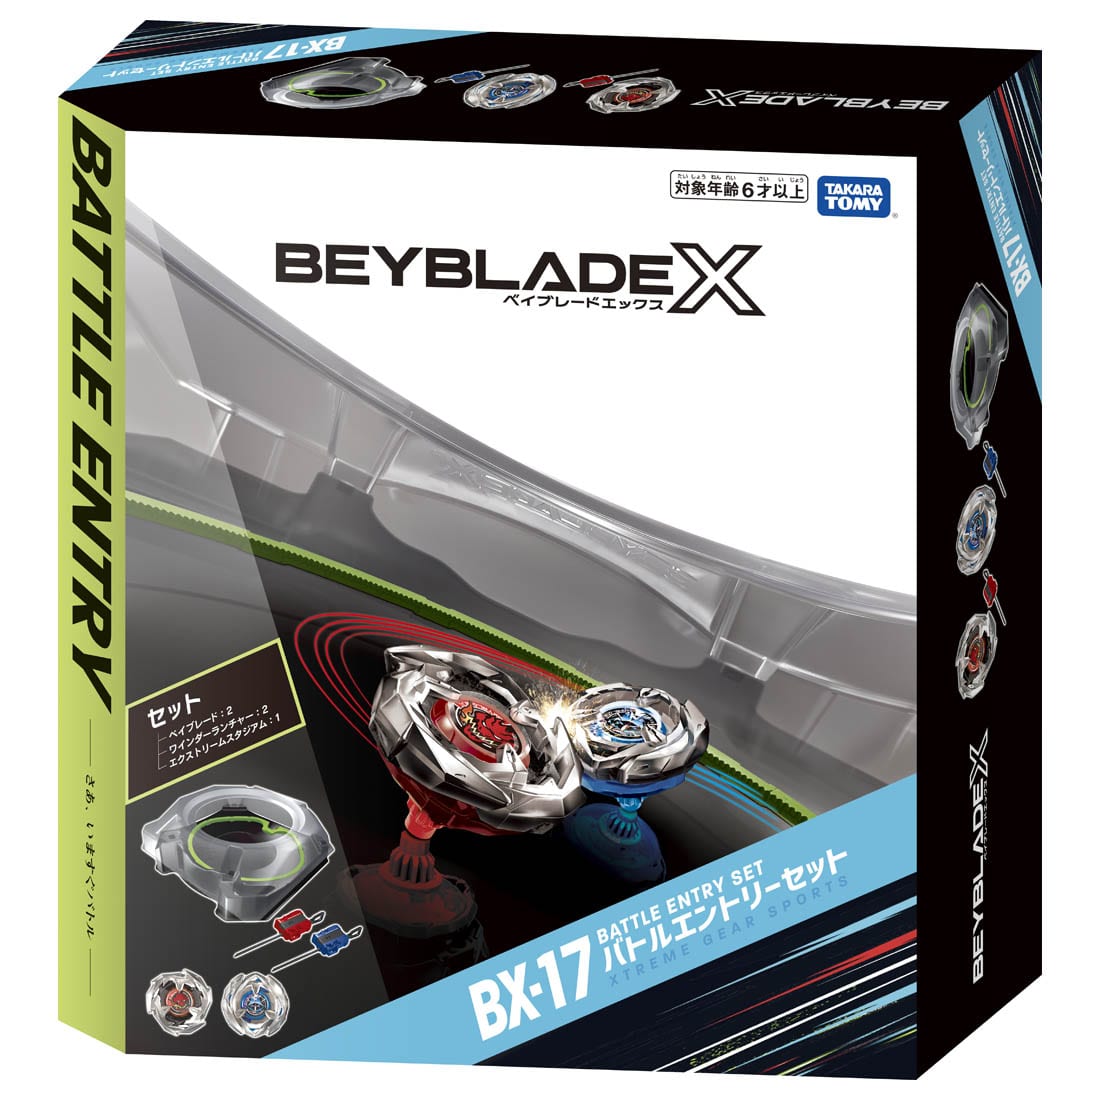 BEYBLADE X『BX-17 バトルエントリーセット』ベイブレード-002